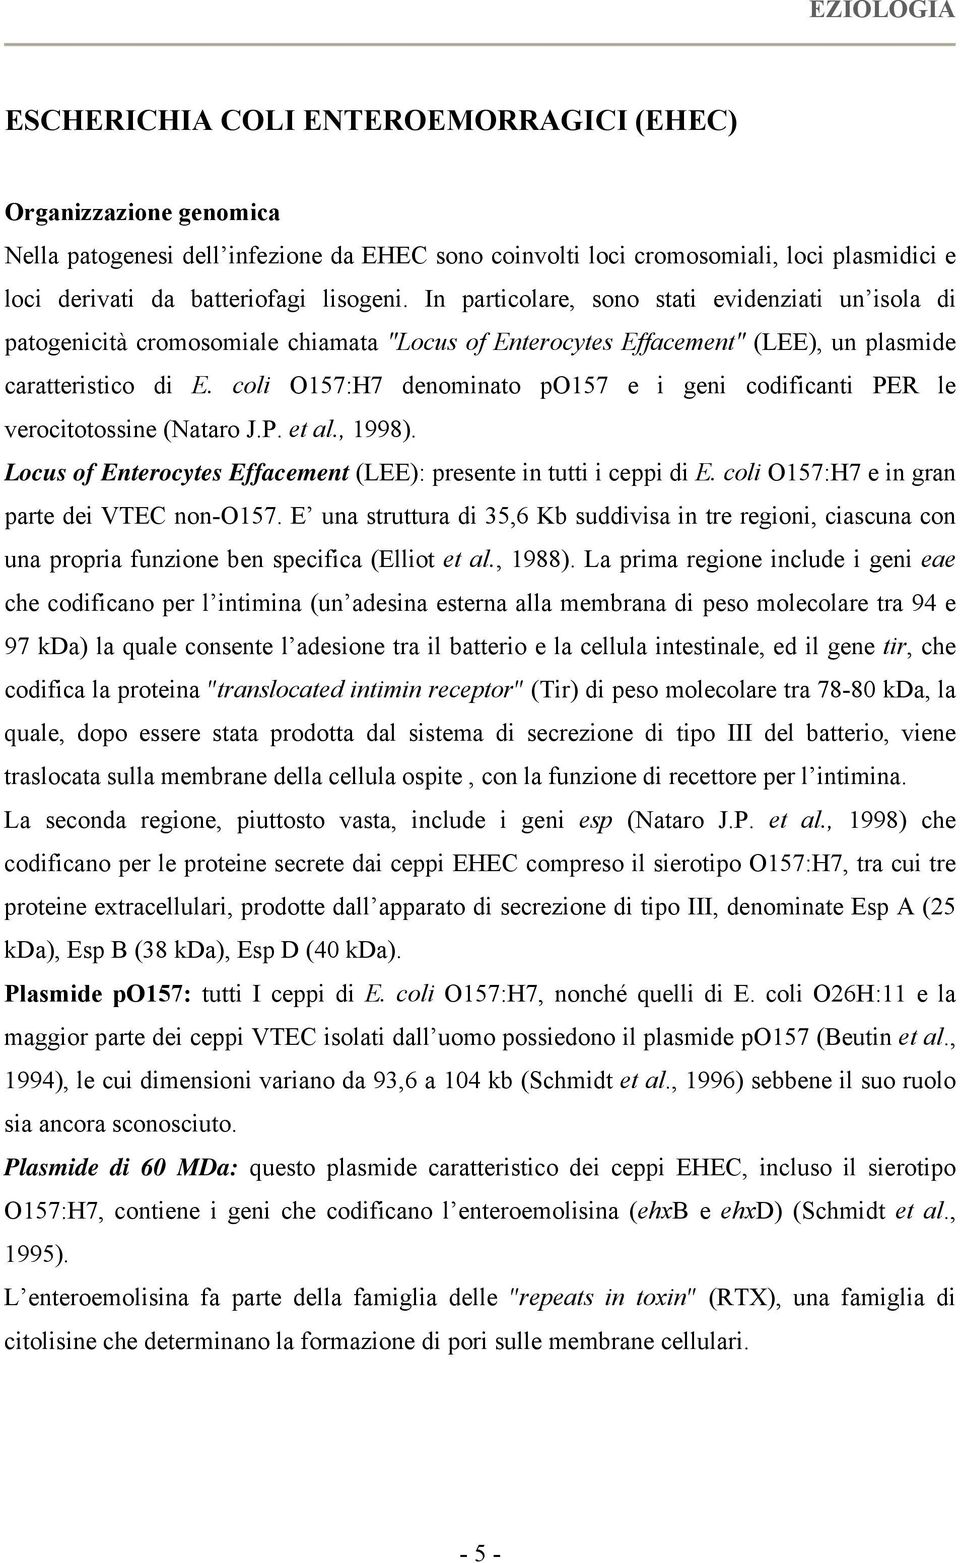 coli O157:H7 denominato po157 e i geni codificanti PER le verocitotossine (Nataro J.P. et al., 1998). Locus of Enterocytes Effacement (LEE): presente in tutti i ceppi di E.